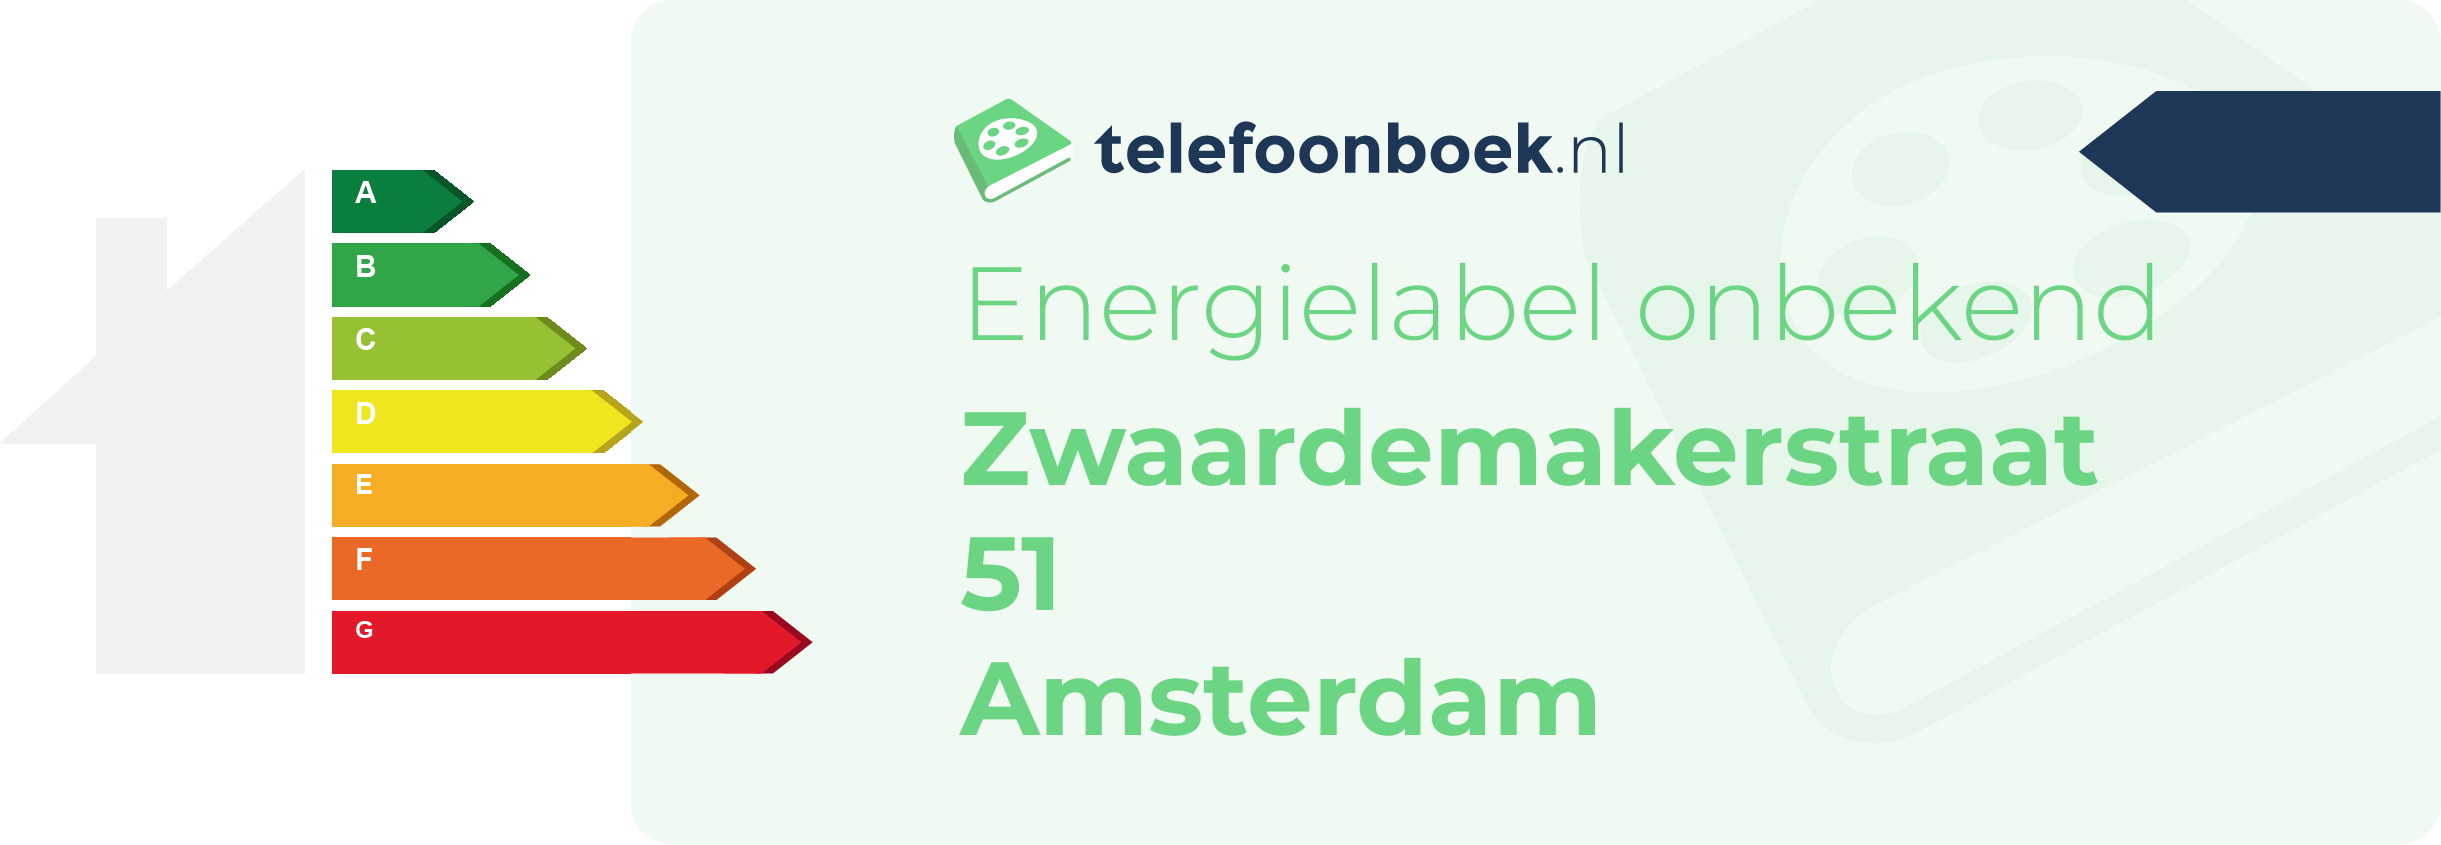 Energielabel Zwaardemakerstraat 51 Amsterdam